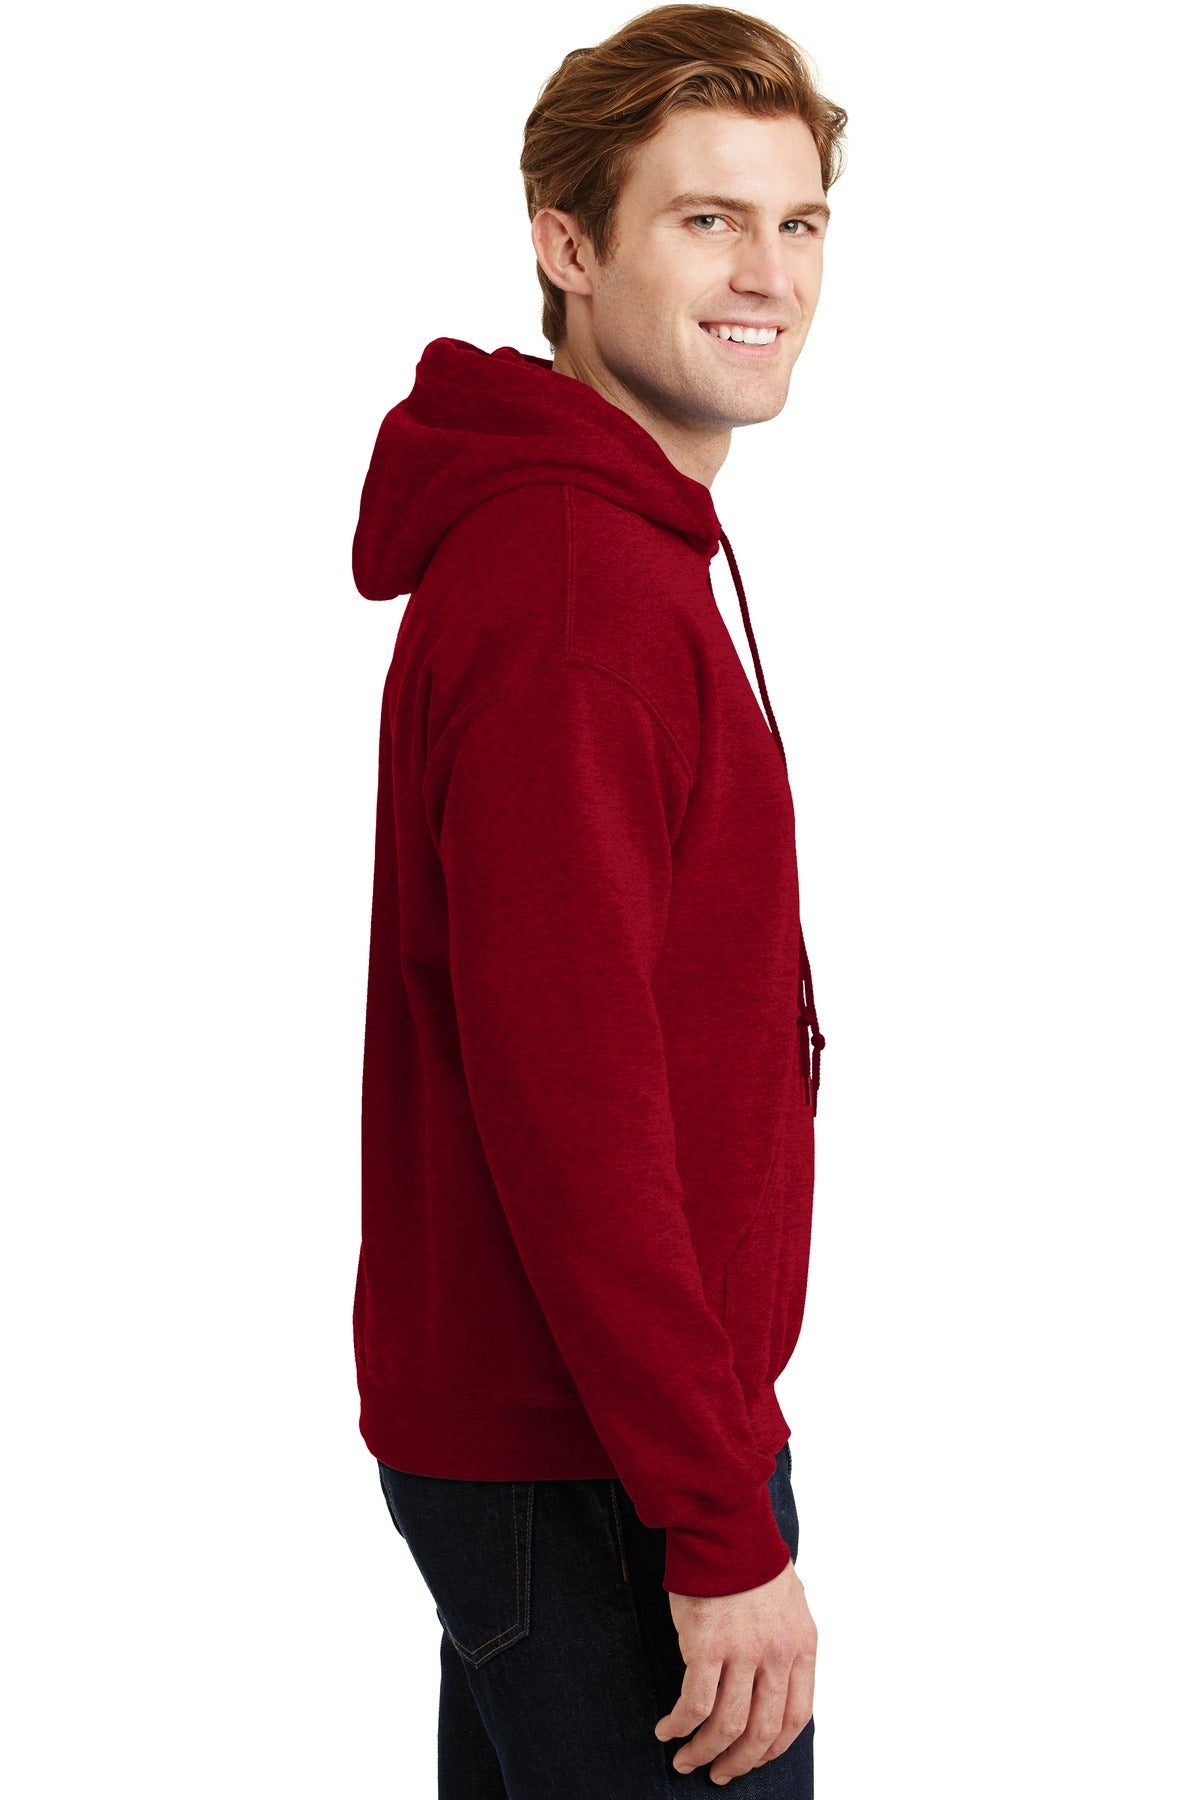 Gildan® - Heavy Blend™ Hooded Sweatshirt. 18500 - DFW Impression